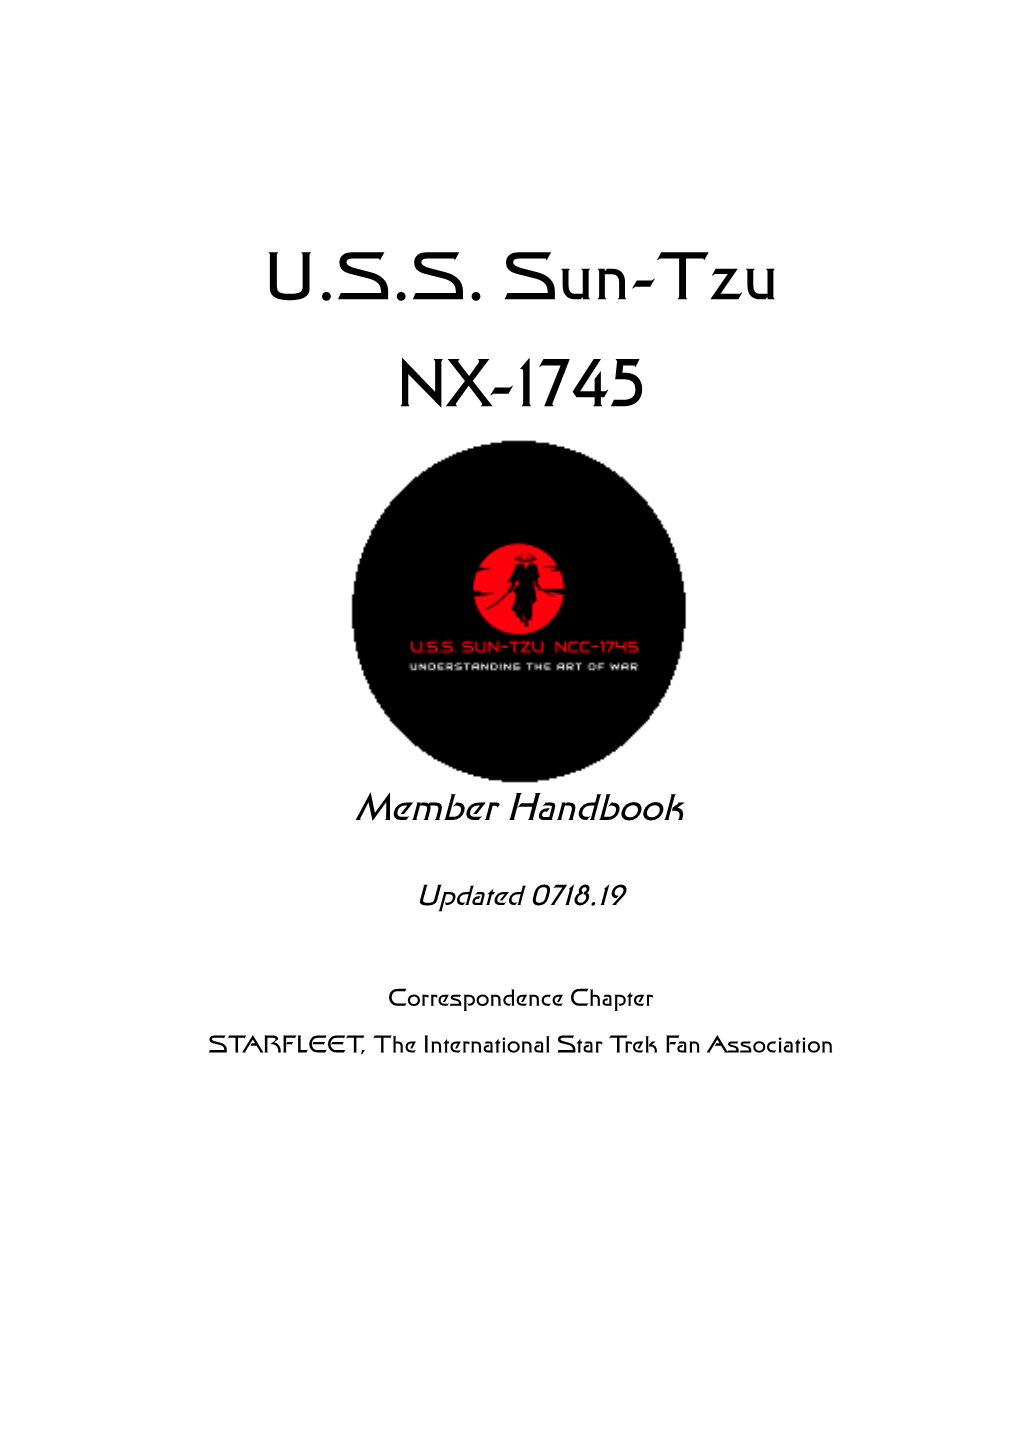 U.S.S. Sun-Tzu NX-1745